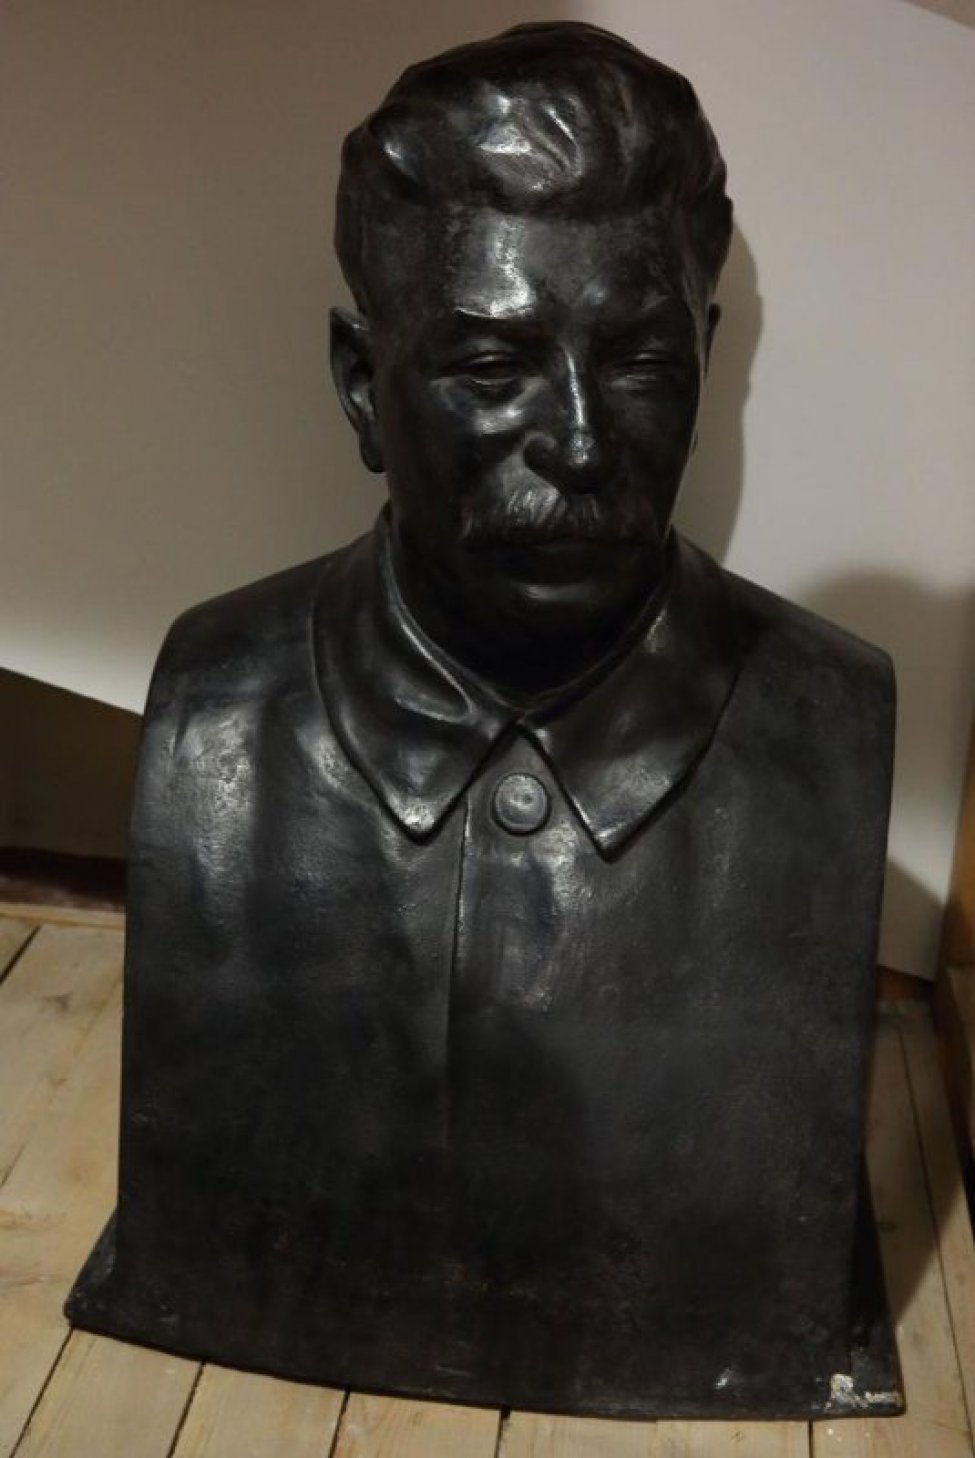 Сталин изображен в кителе. Лицо обращено чуть вправо. На лице - усы.